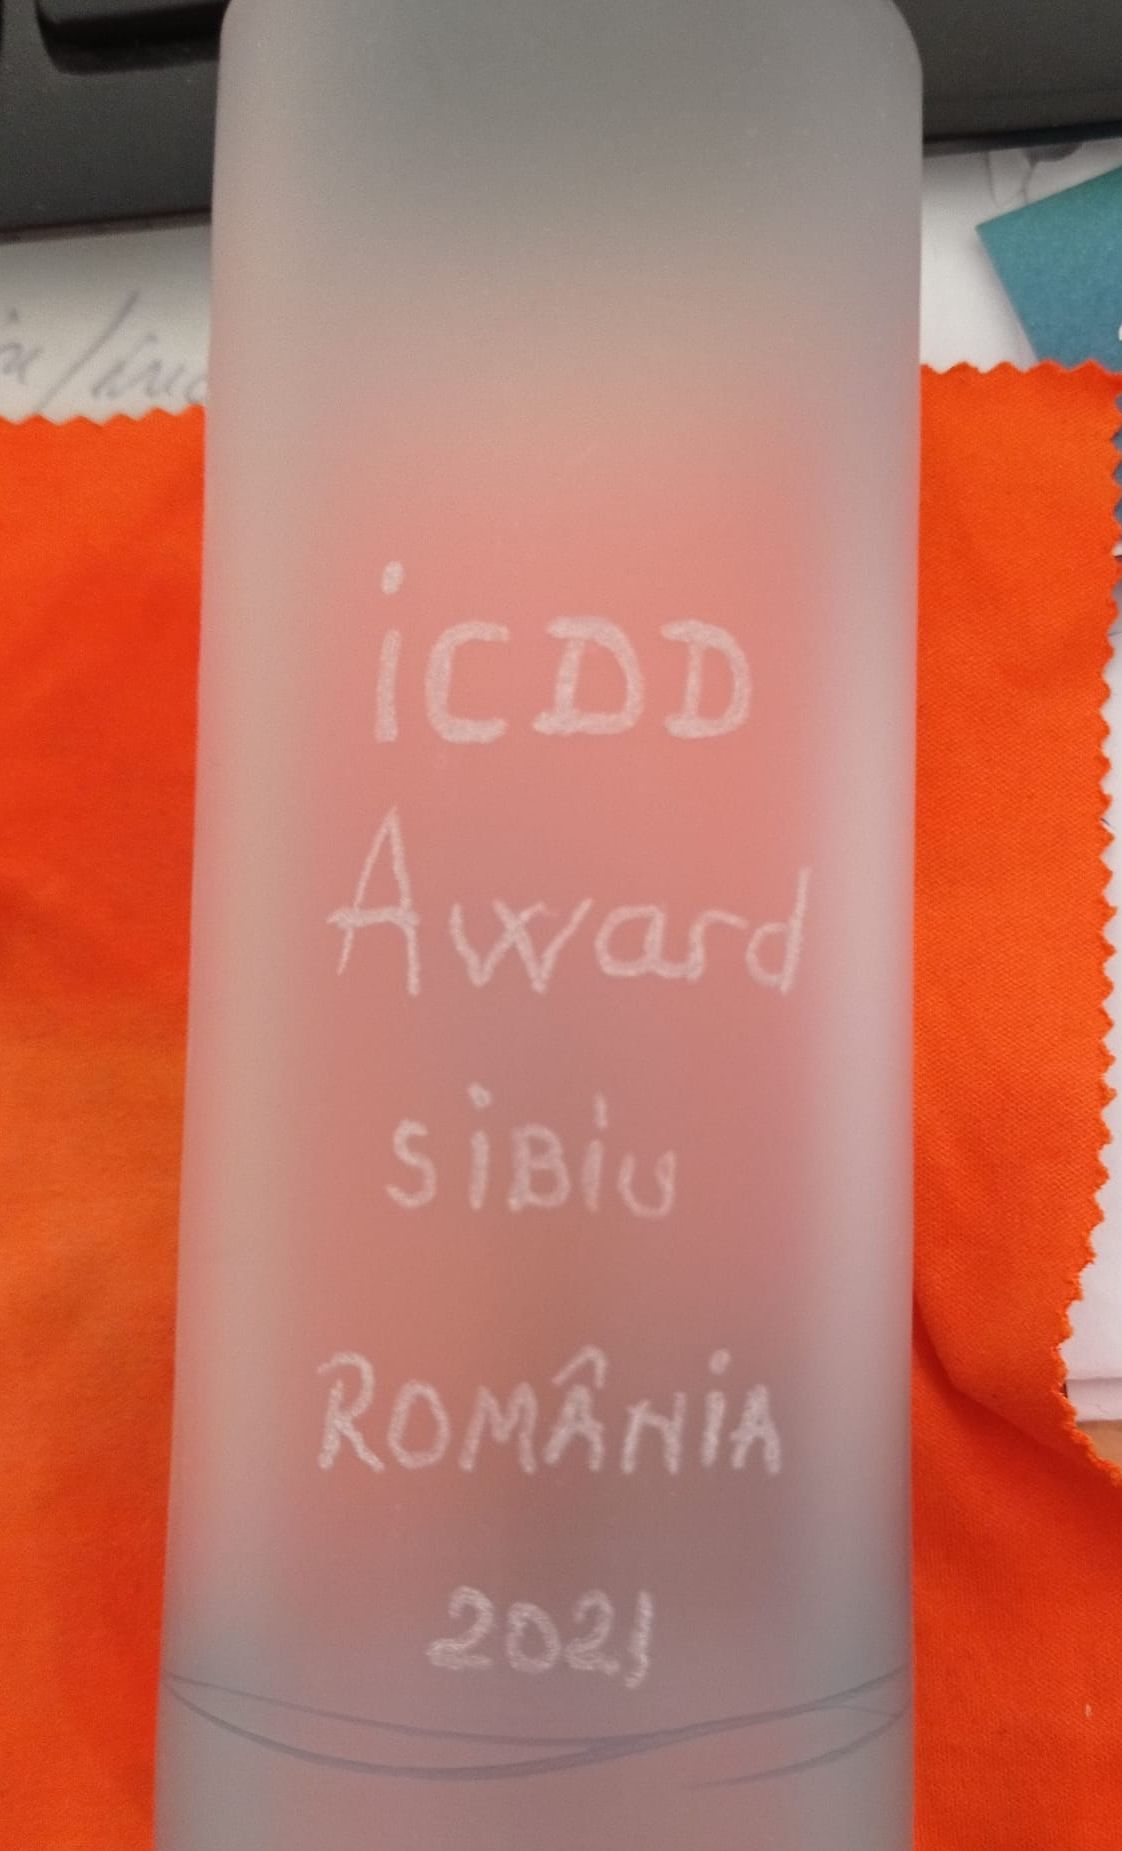 ICDD 2021 Trophy